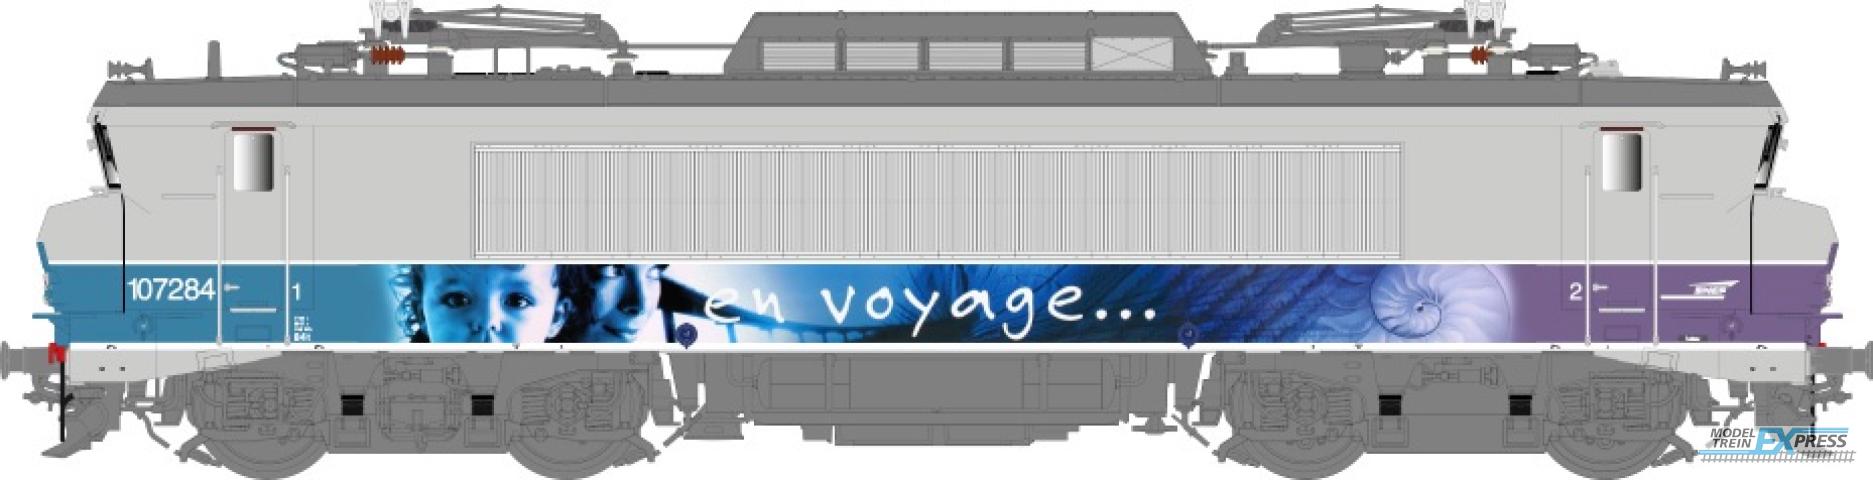 LS Models 10705 BB 7200, grijs/paars, En Voyage, pet logo, front nummer, grote cabine  /  Ep. V  /  SNCF  /  HO  /  AC  /  1 P.